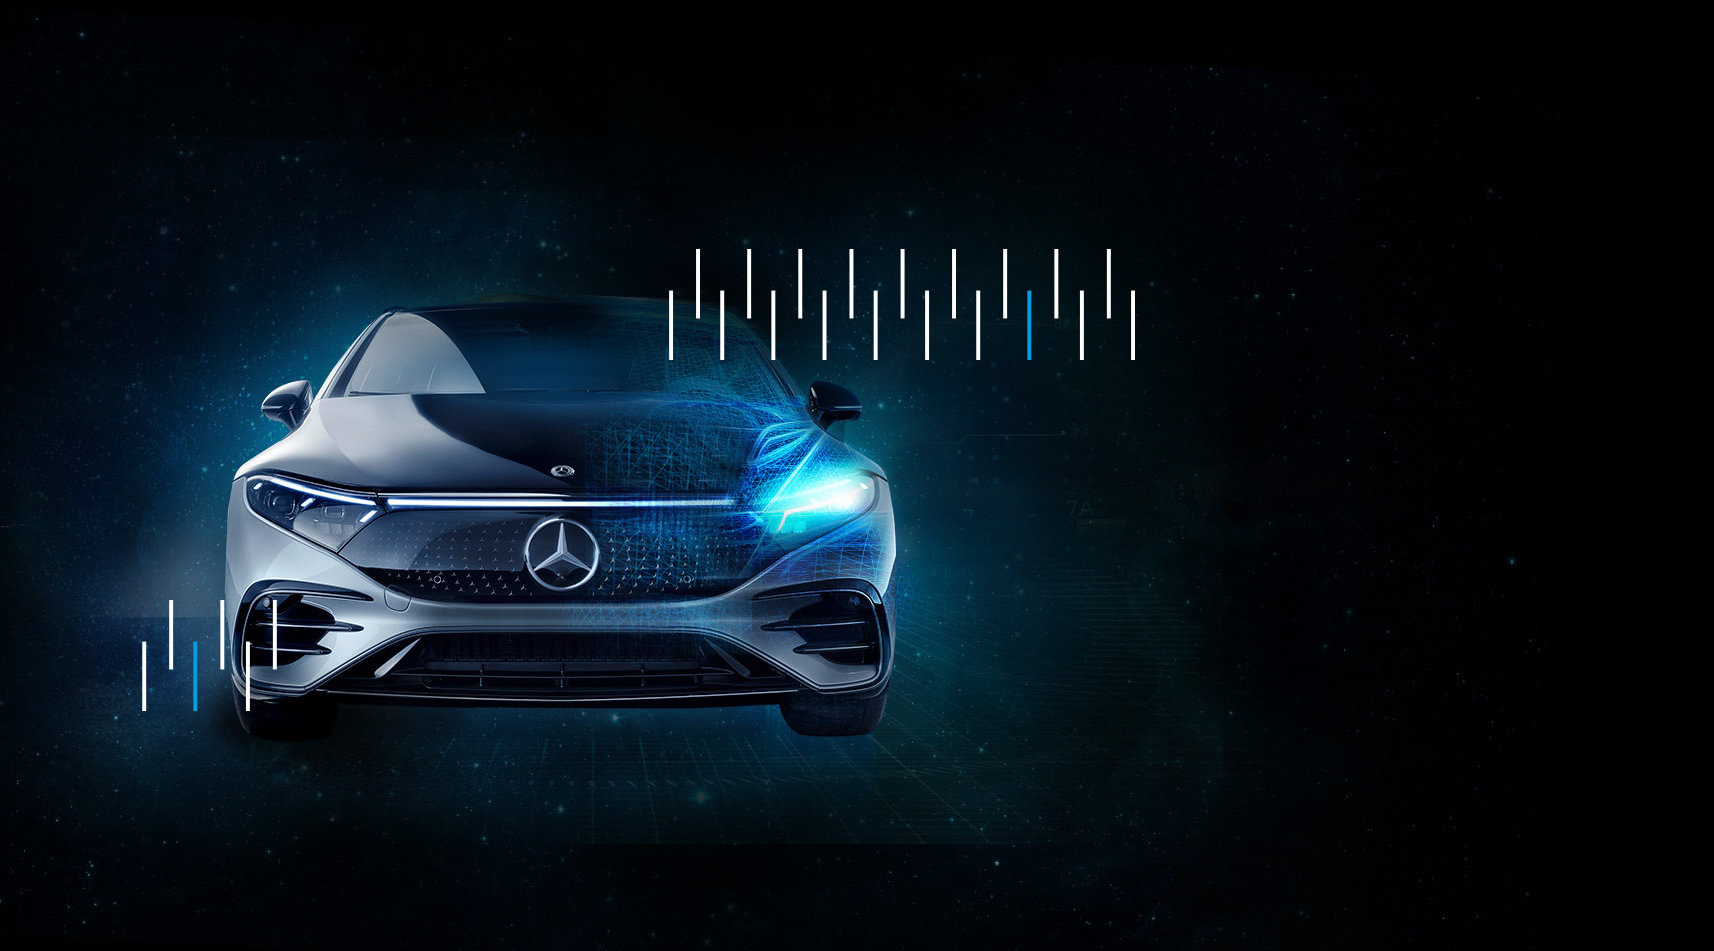 Keyvisual für das Digital Product Forum von Mercedes Benz